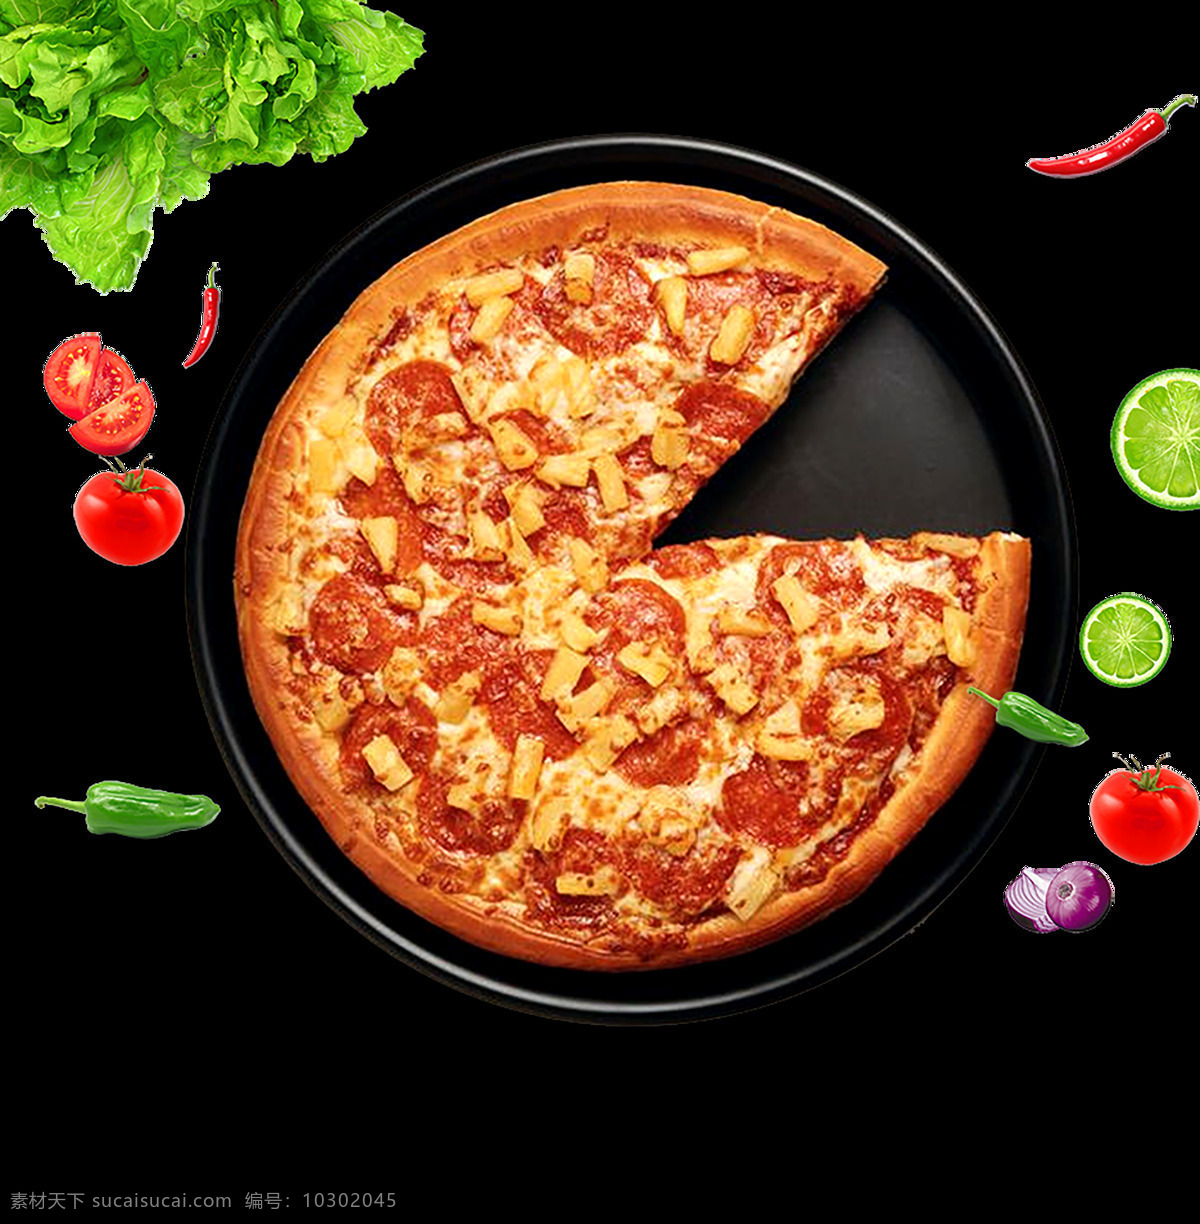 披萨图片 披萨 披萨海报 披萨展板 特色披萨 美味披萨 小吃 美食海报 美食小吃 披萨墙画 披萨菜单 牛肉披萨 夏威夷披萨 田园披萨 水果披萨 菠萝披萨 意式披萨 披萨字体 培根披萨 至尊披萨 披萨展架 西餐披萨 披萨广告 披萨宣传 现烤披萨 新鲜披萨 外卖披萨 披萨宣传单 披萨单页 披萨门店 美食 背景系列 展板模板